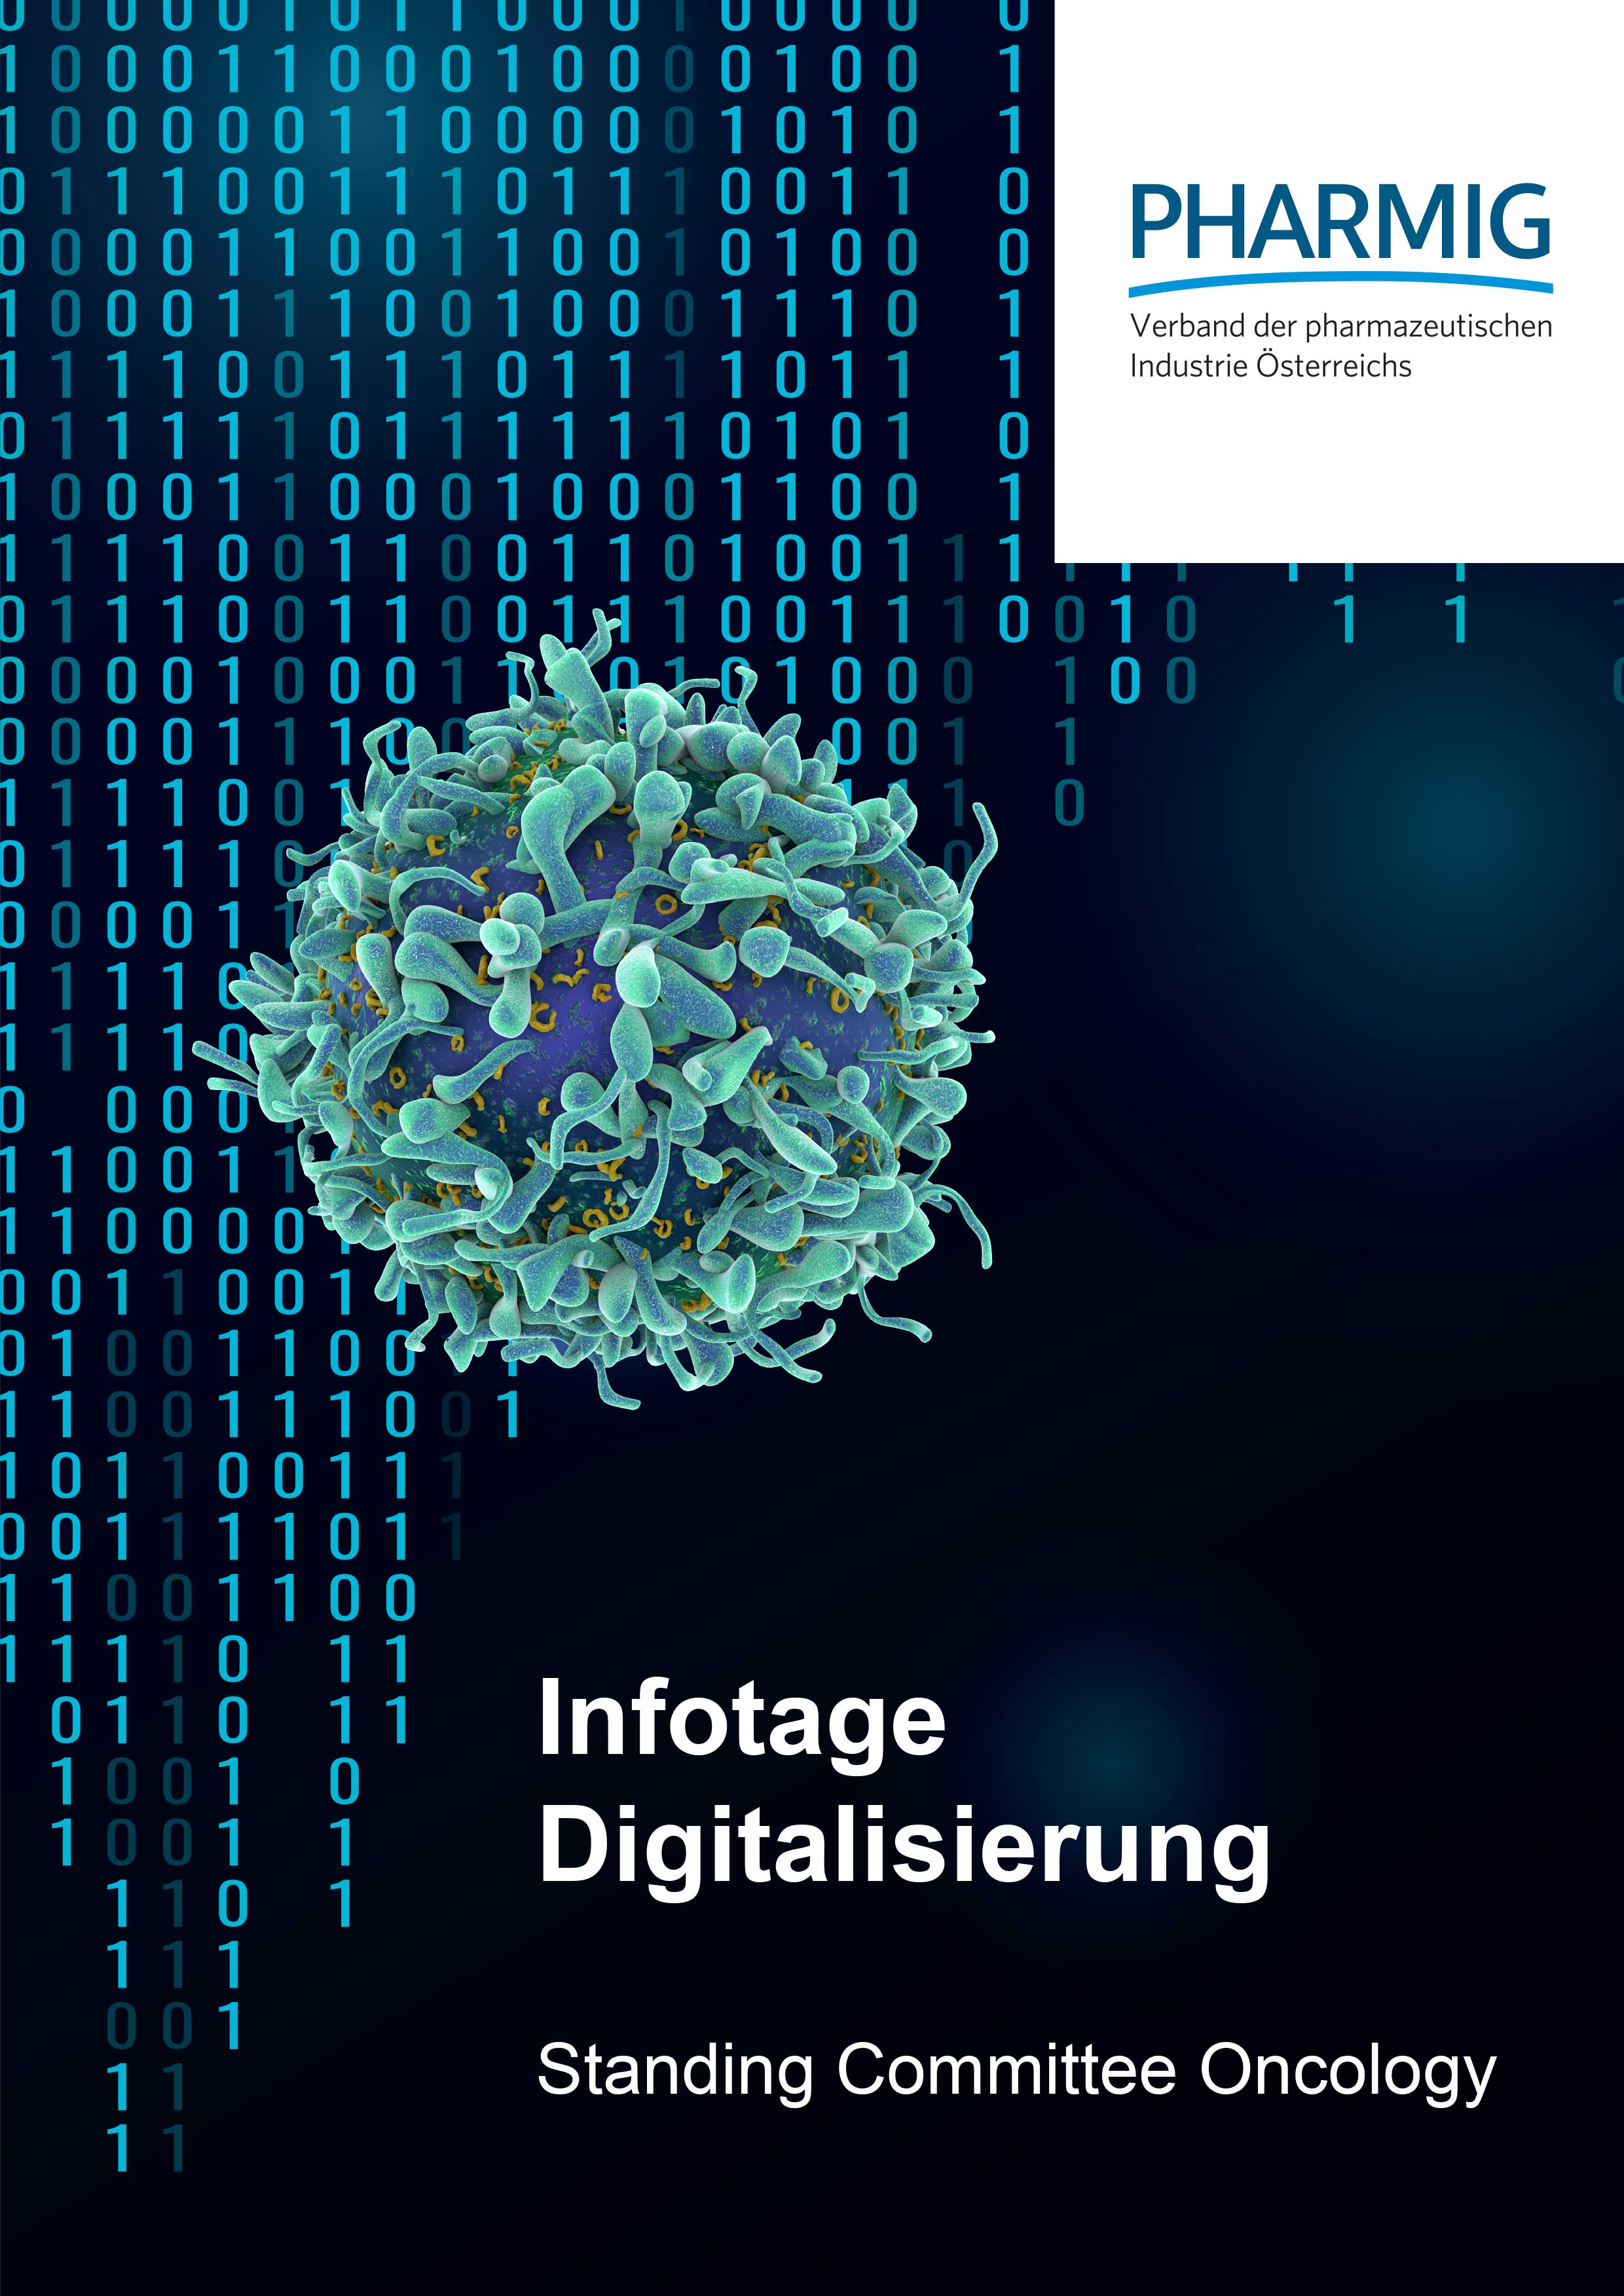 © PHARMIG Infotage Digitalisierung - Onkologie